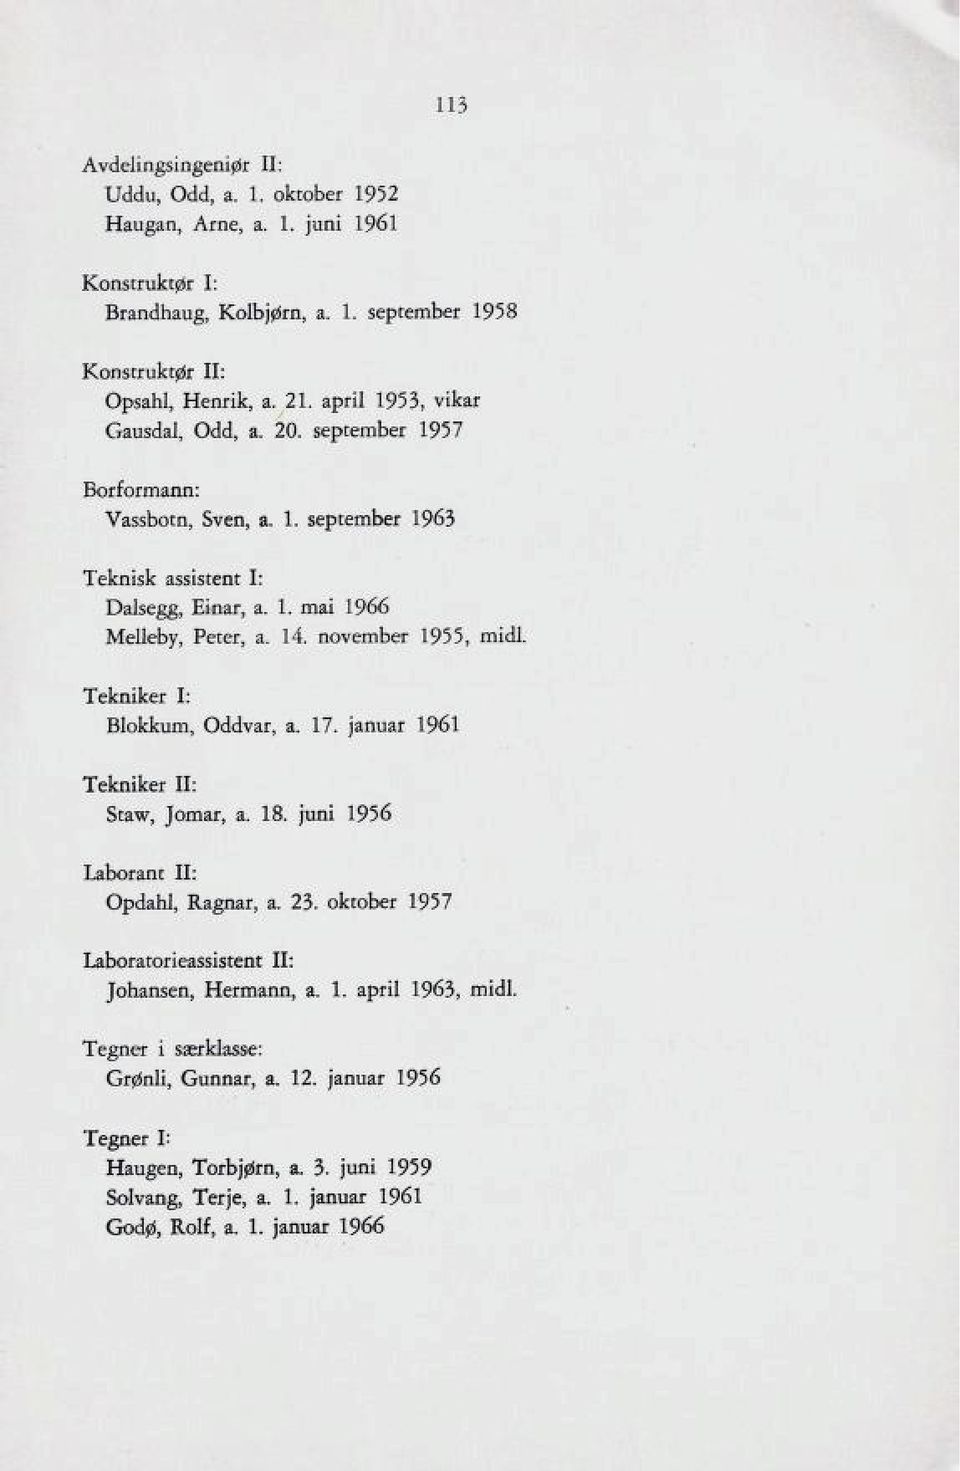 november 1955, midl Tekniker I: Blokkum, Oddvar, a. 17. januar 1961 Tekniker II: Staw, Jomar, a. 18. juni 1956 Laborant II: Opdahl, Ragnar, a. 23.